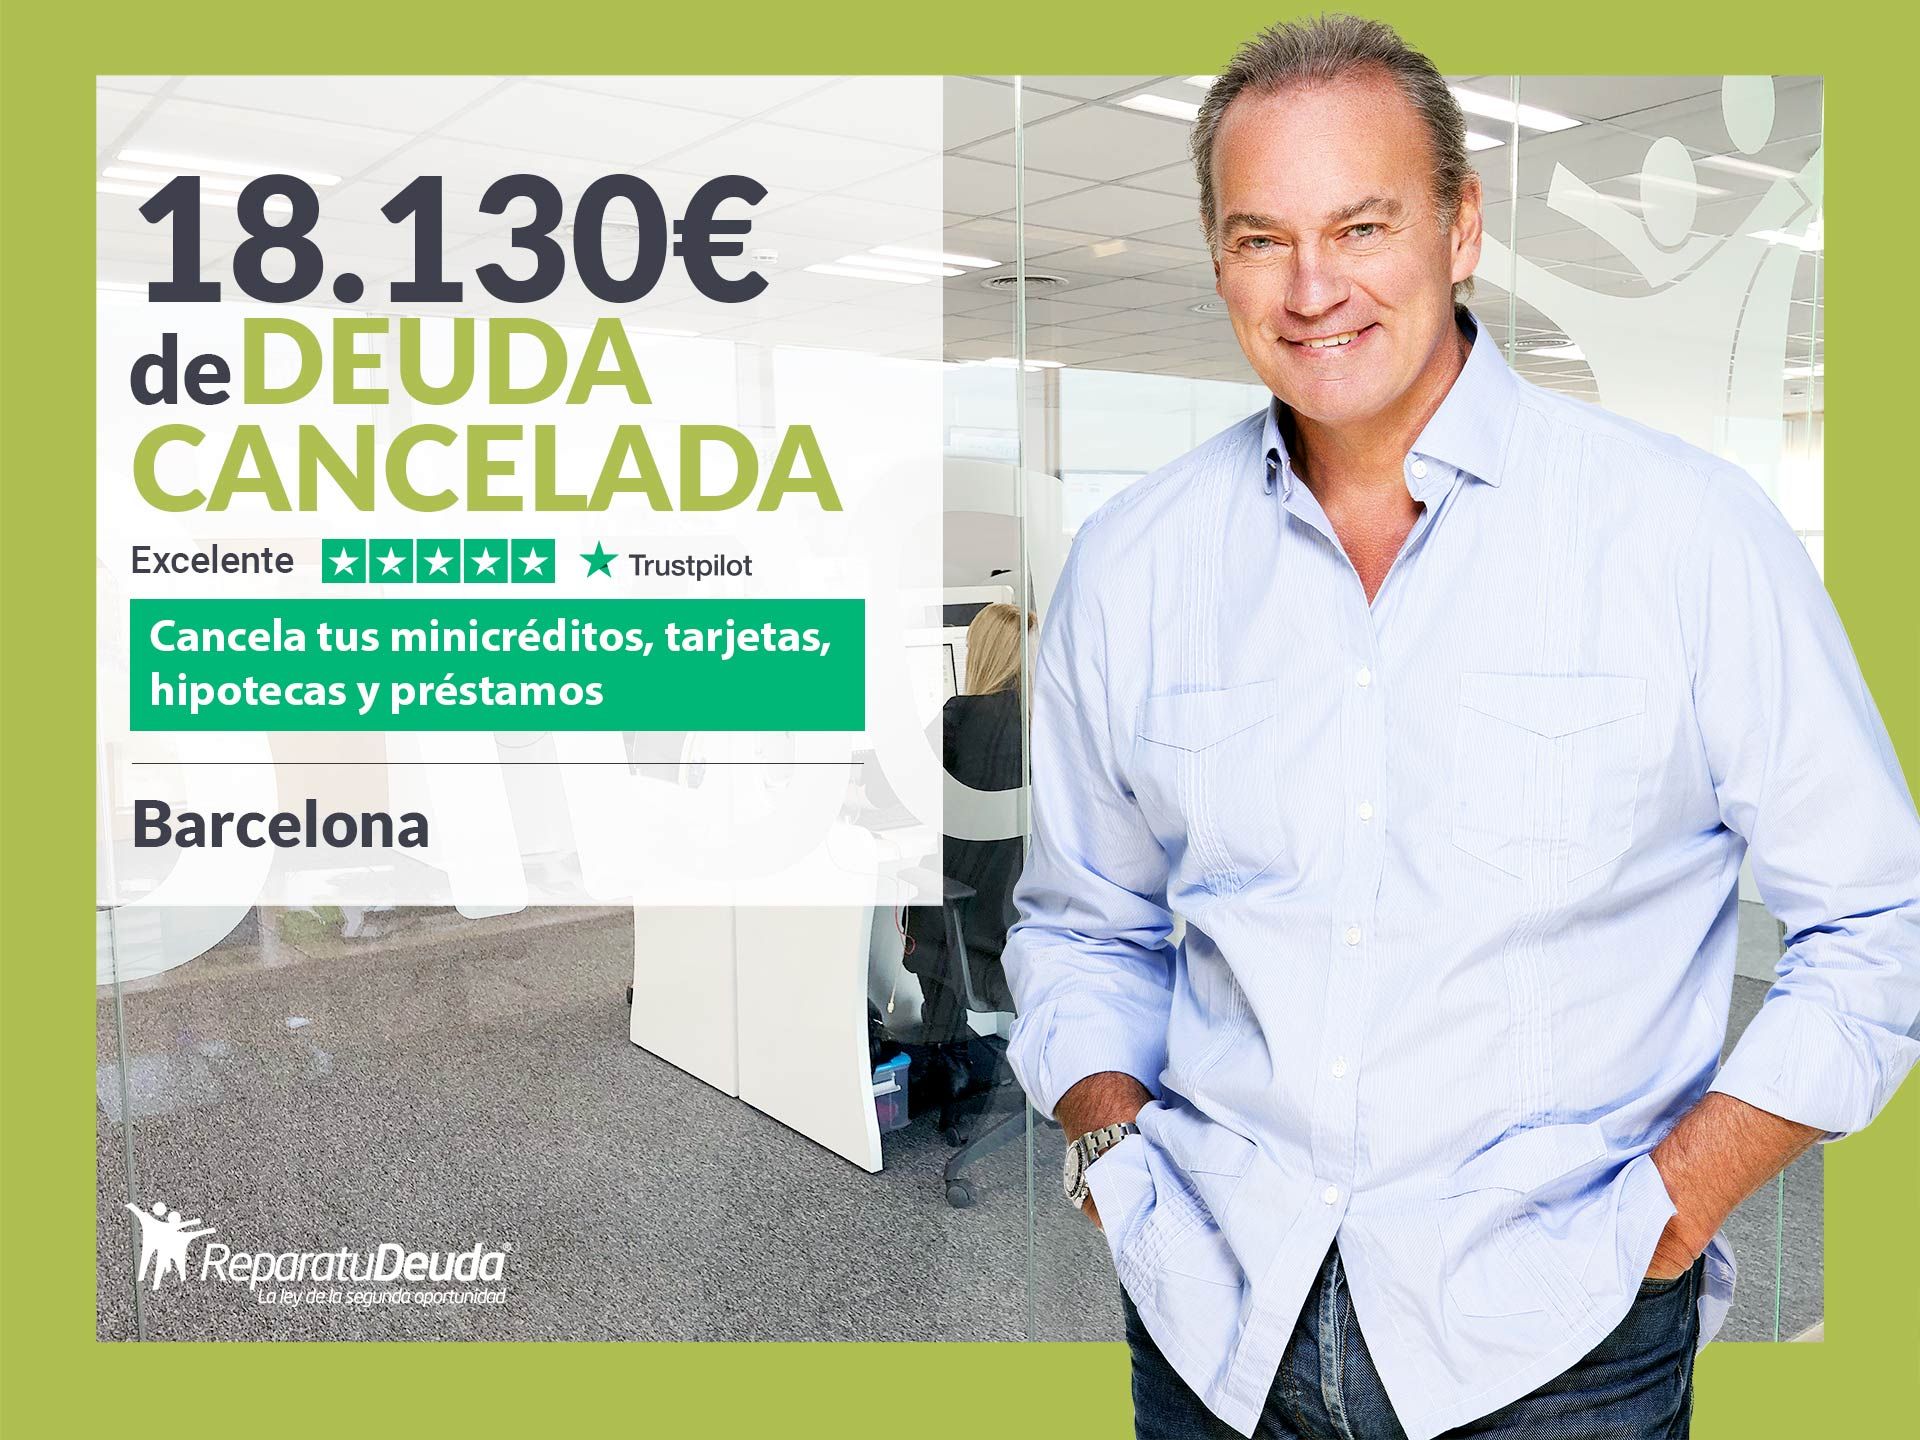 Repara tu Deuda Abogados cancela 18.130? en Barcelona (Catalunya) gracias a la Ley de Segunda Oportunidad